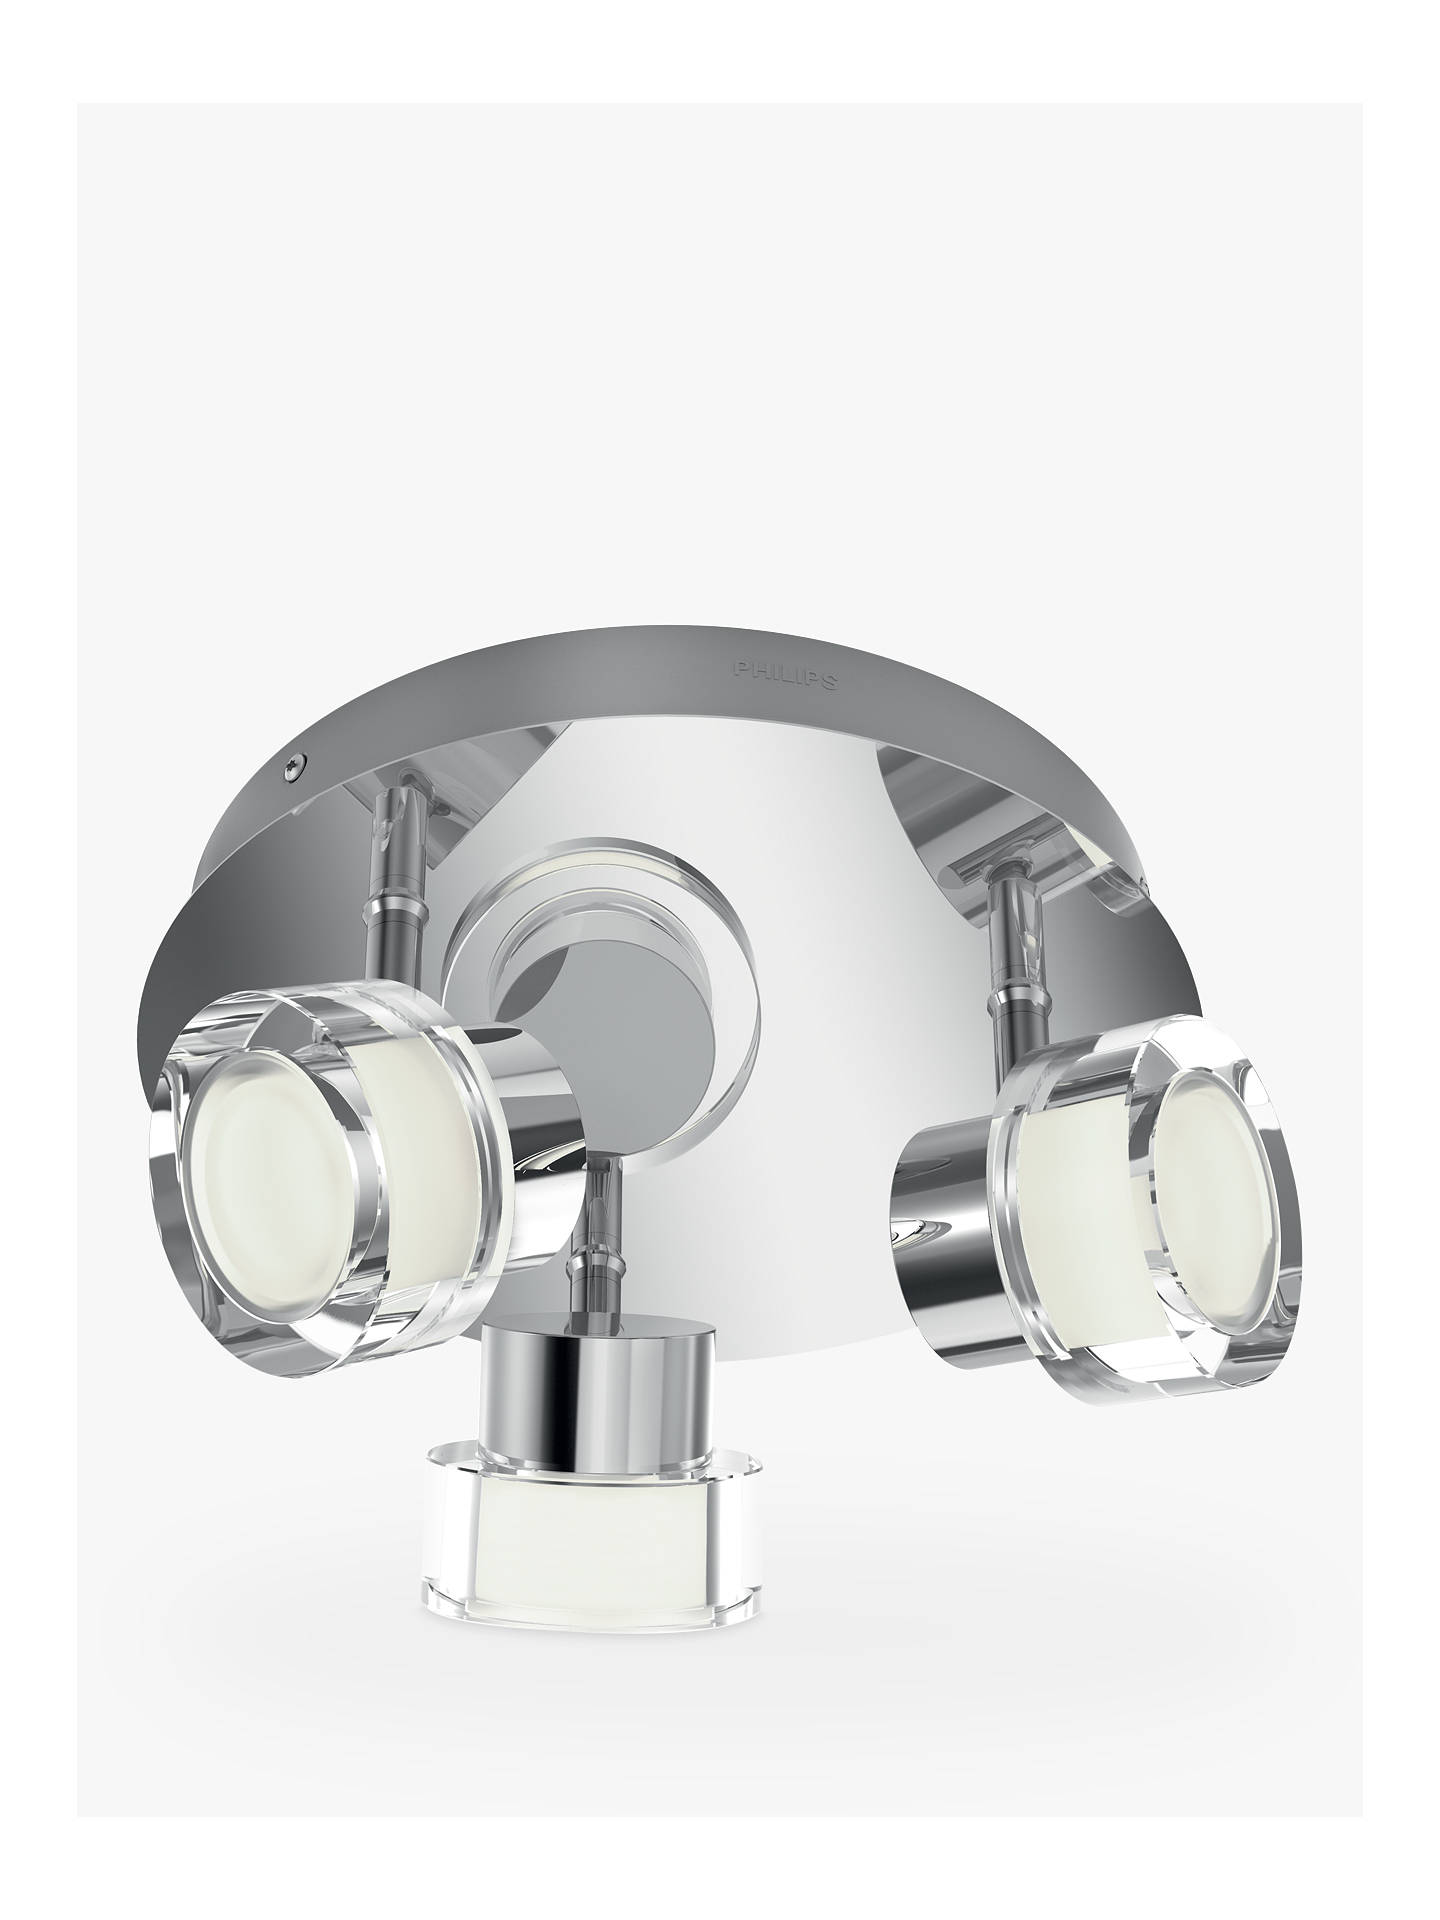 Philips Resort Led 3 Arm Bathroom Ceiling Light Chrome At John